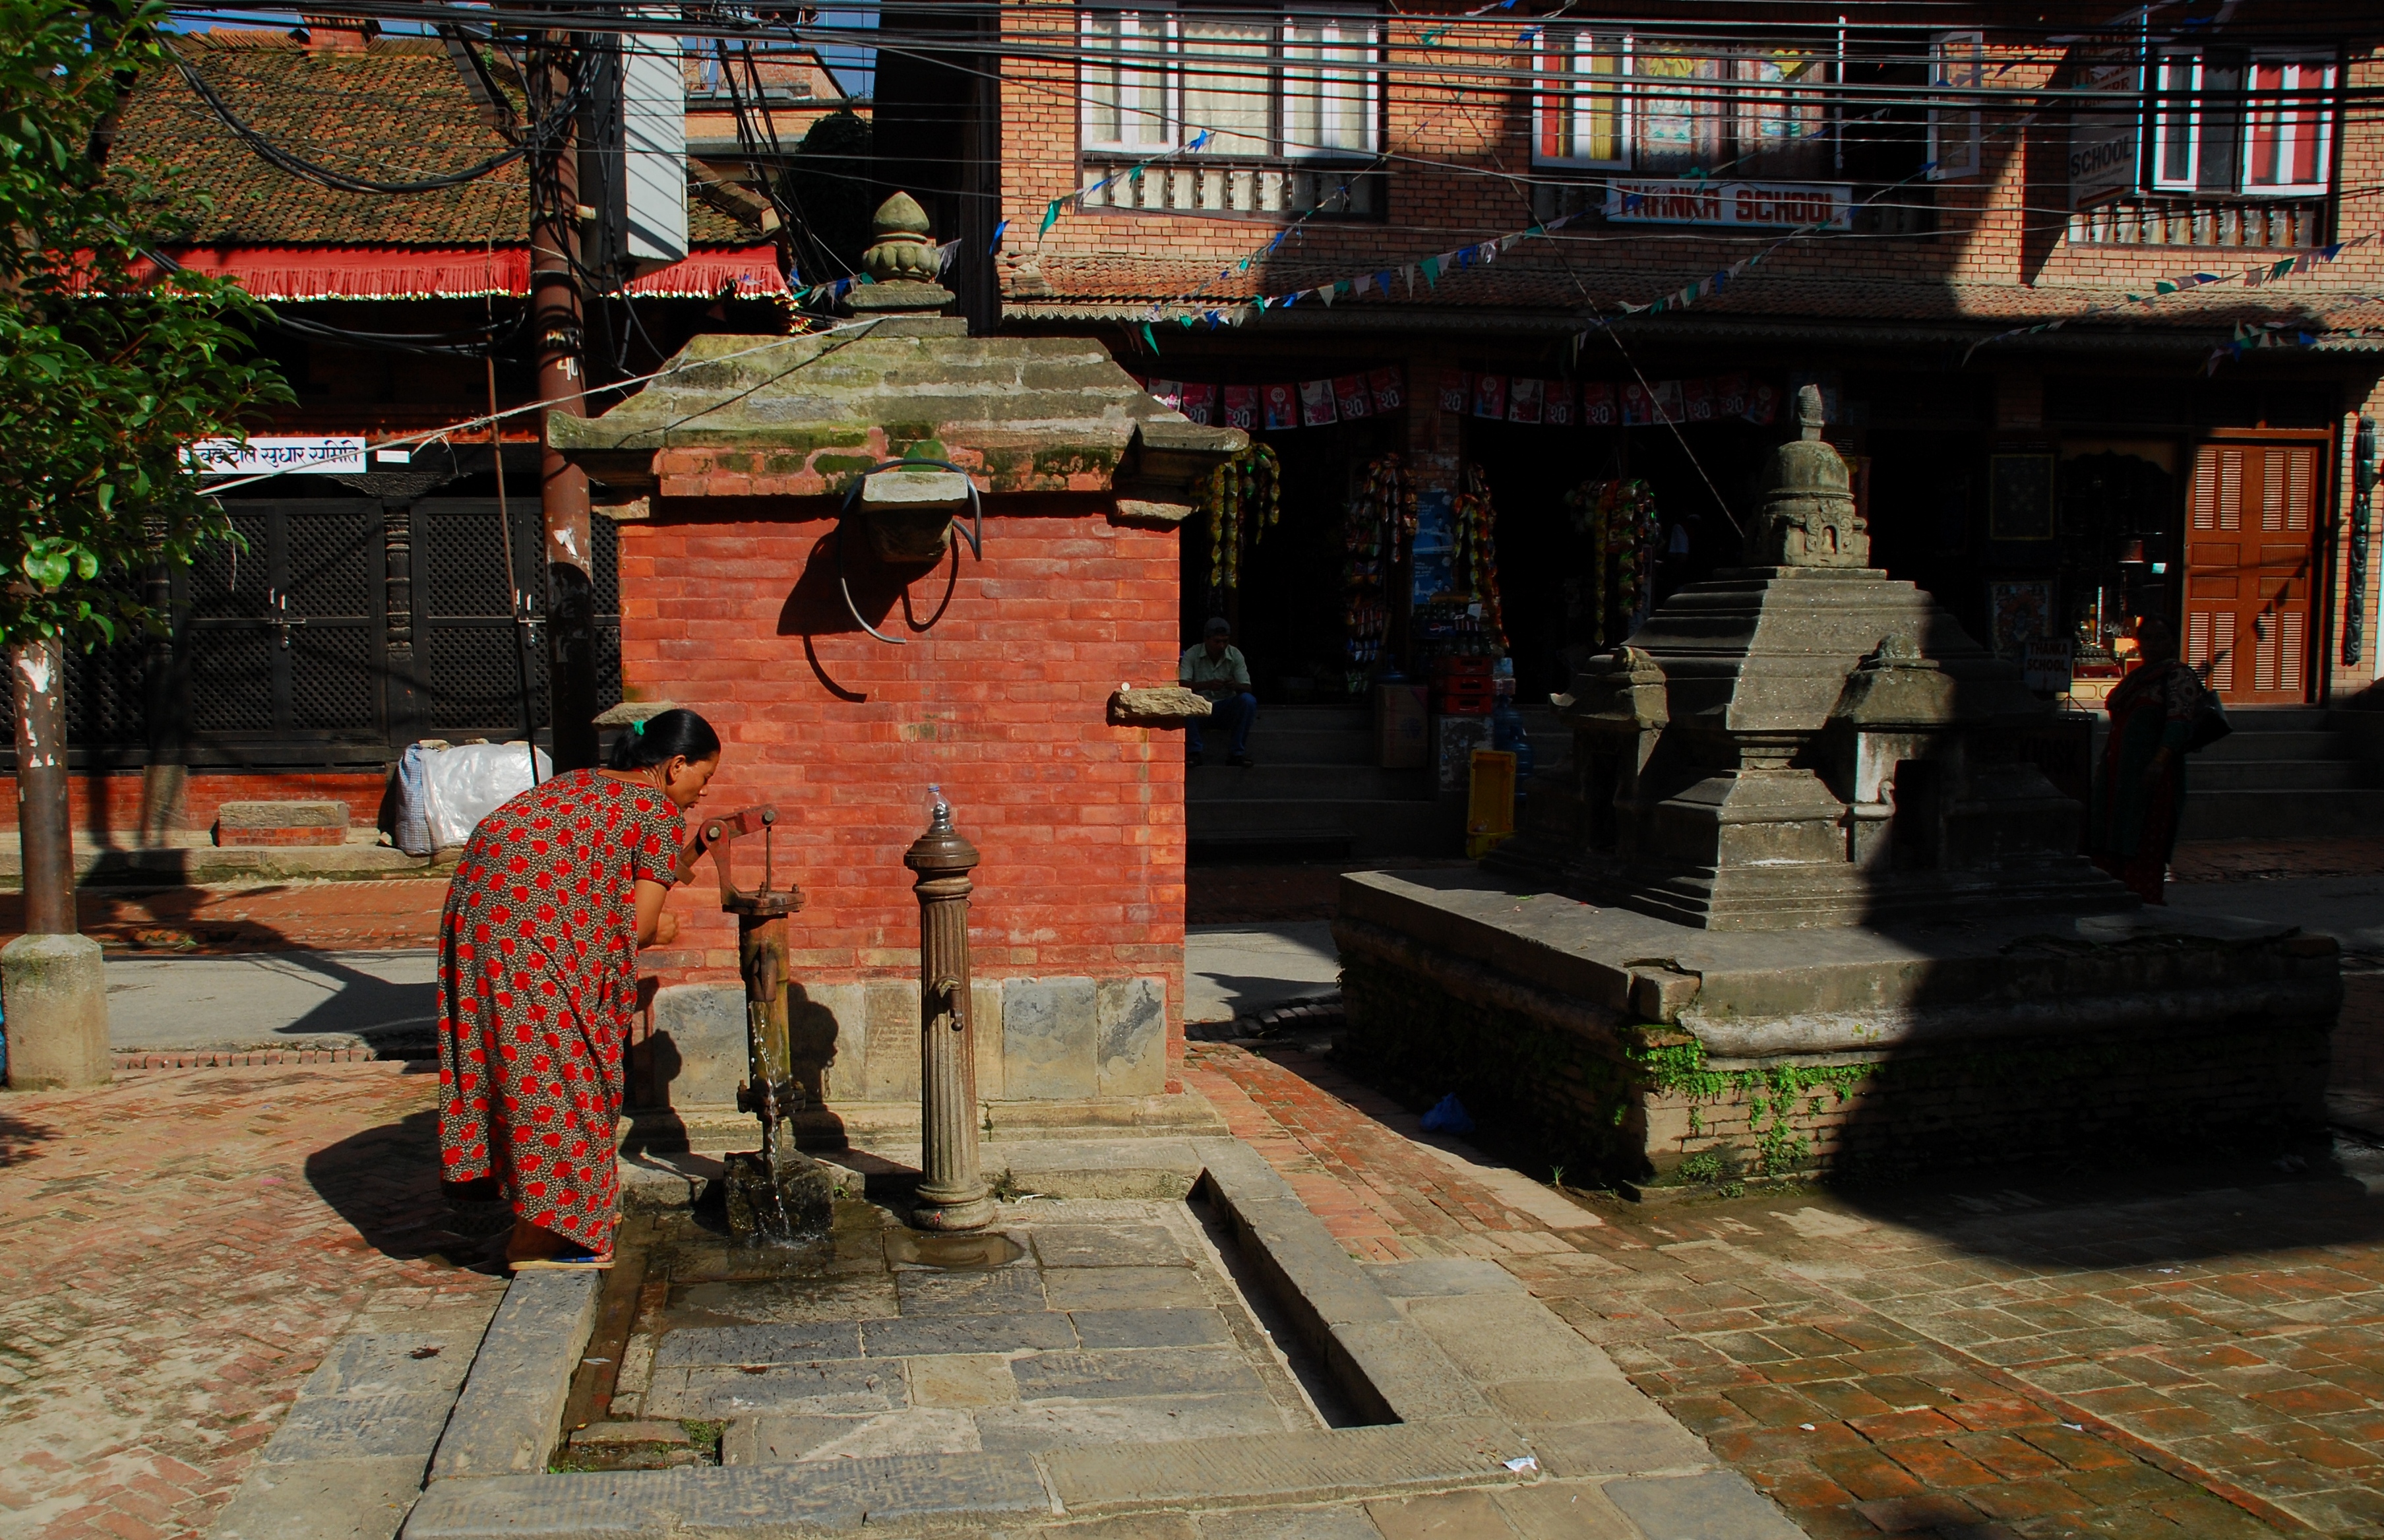 Foto de Patan, Nepal